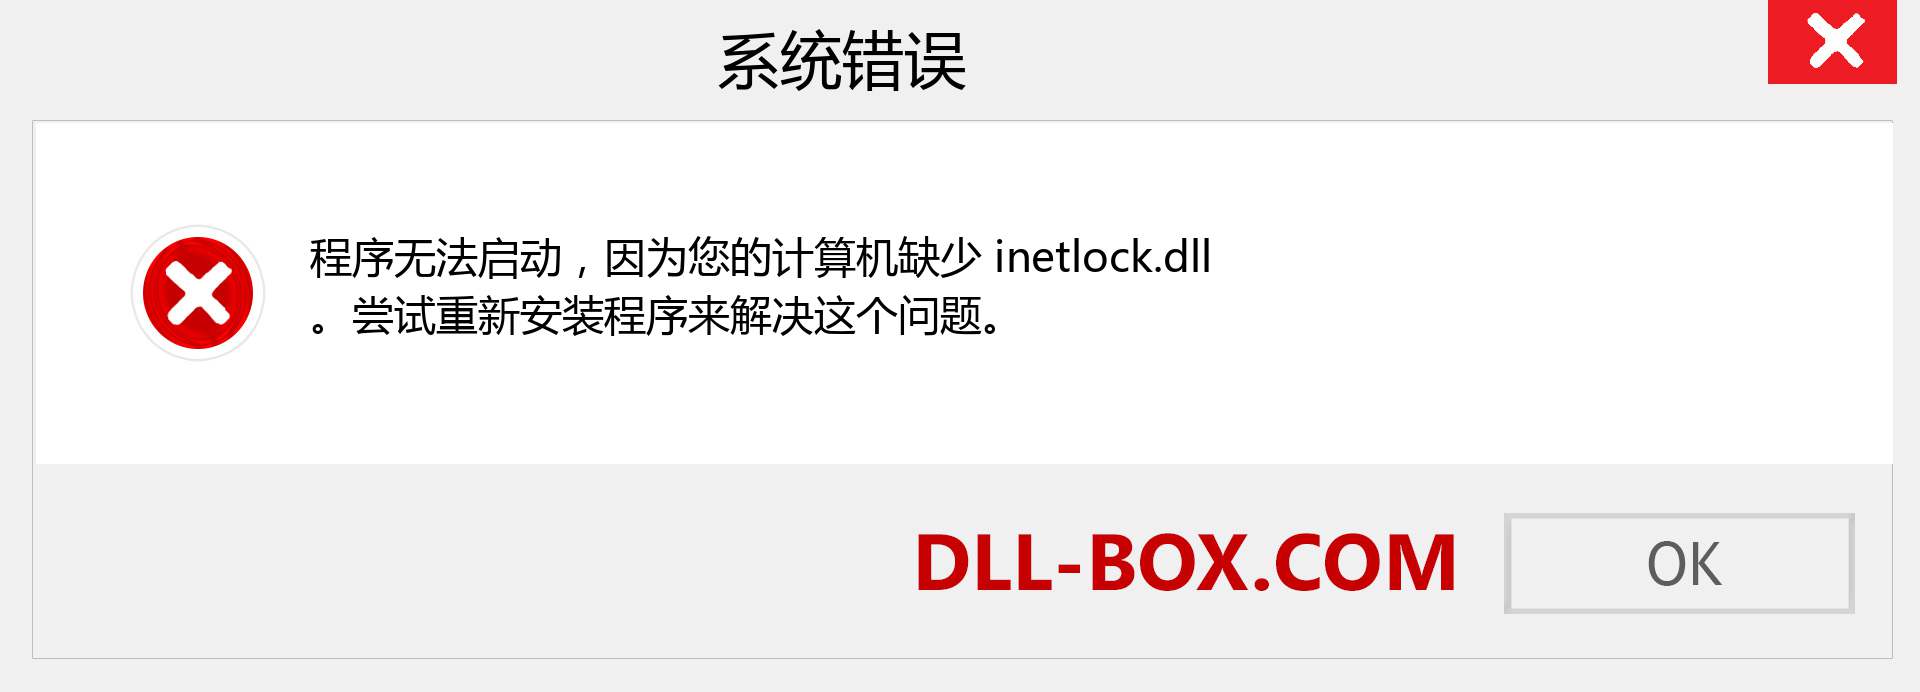 inetlock.dll 文件丢失？。 适用于 Windows 7、8、10 的下载 - 修复 Windows、照片、图像上的 inetlock dll 丢失错误